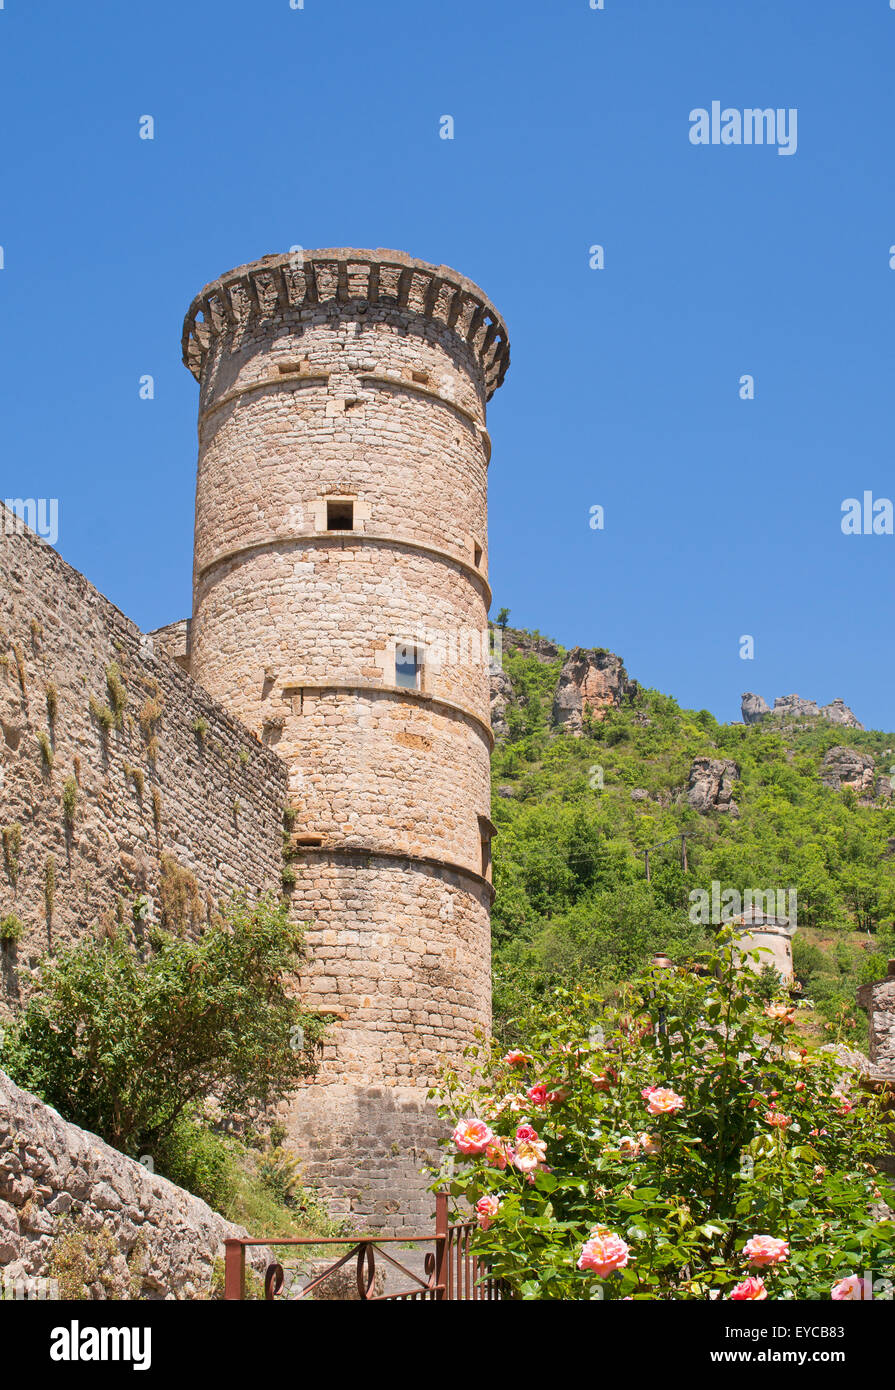 La tour circulaire dans le village de La Roque-Sainte-Marguerite dans la vallée de la Dourbie, près de Millau, France, Europe Banque D'Images